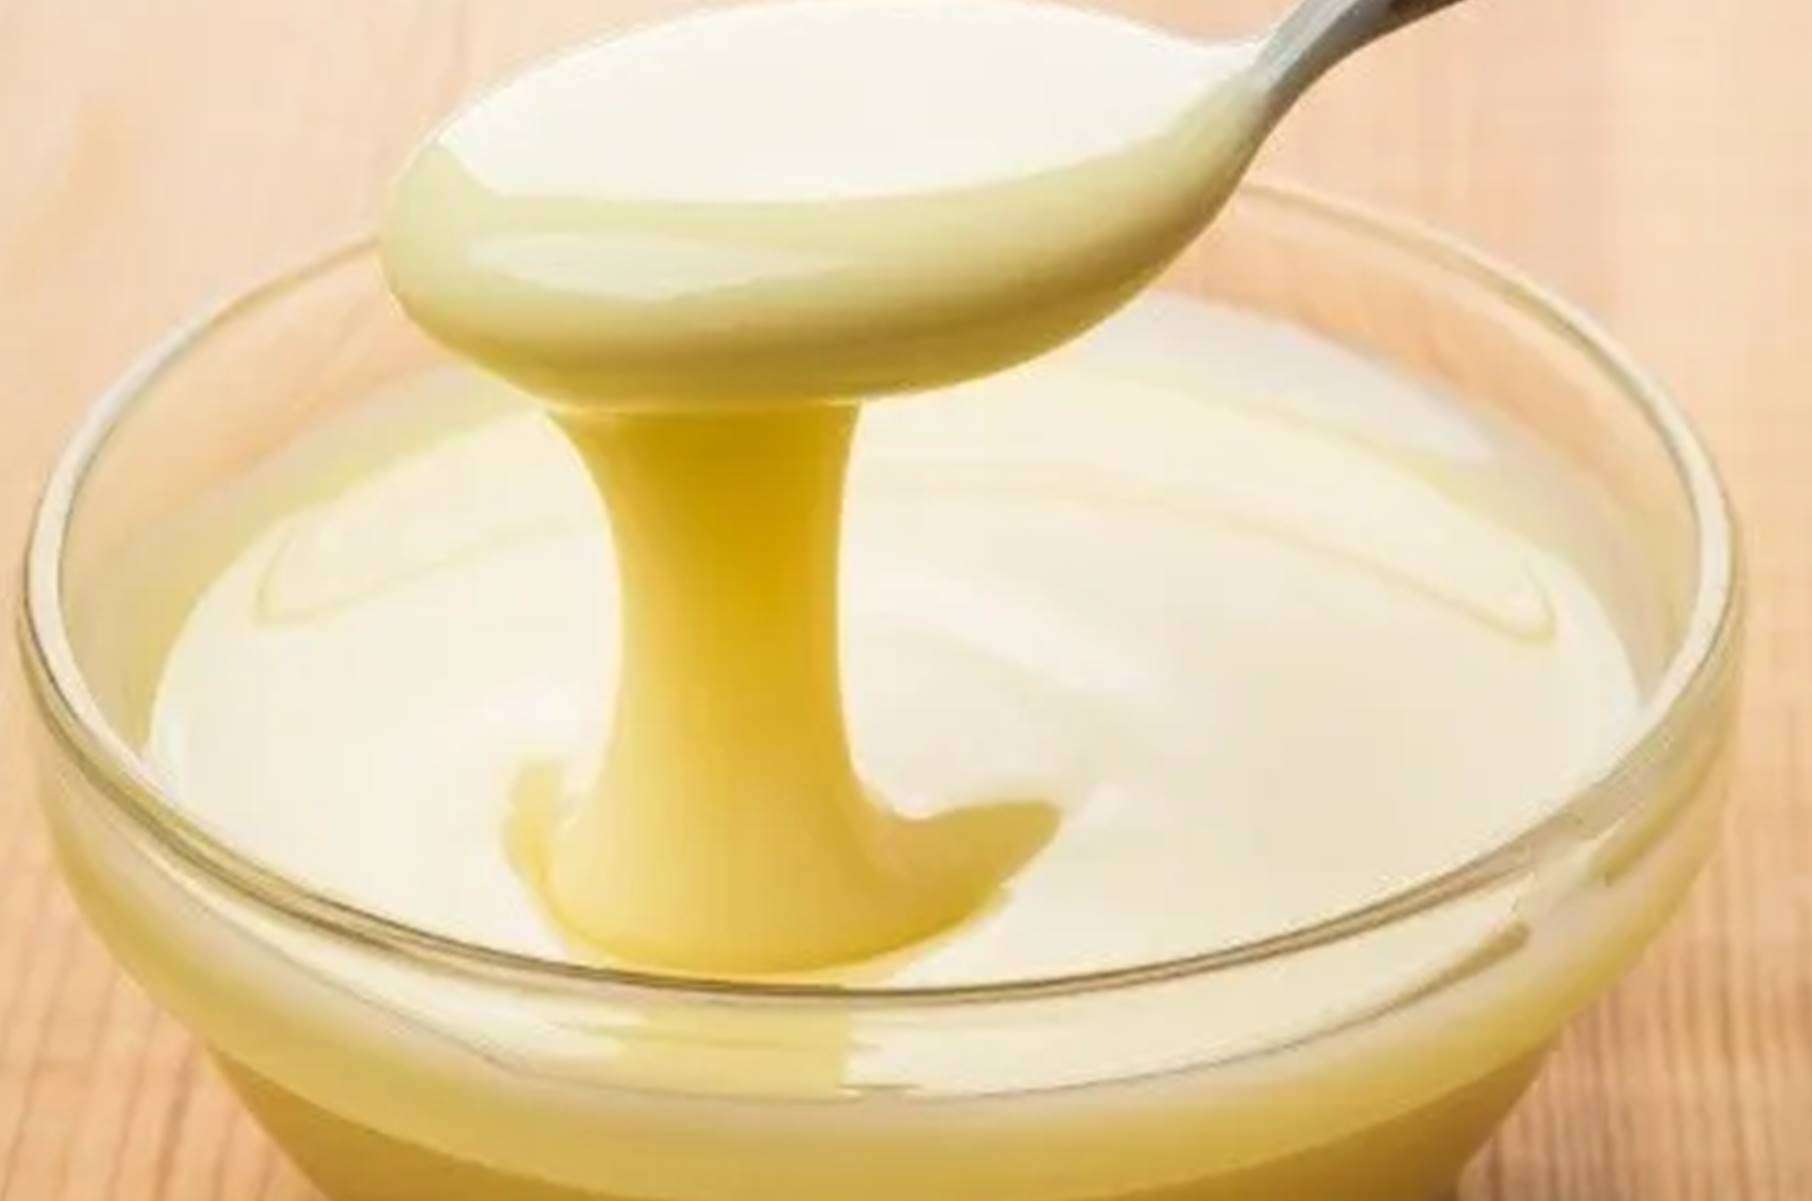 Em 5 minutos: Faça um leite condensado fit caseiro muito cremoso